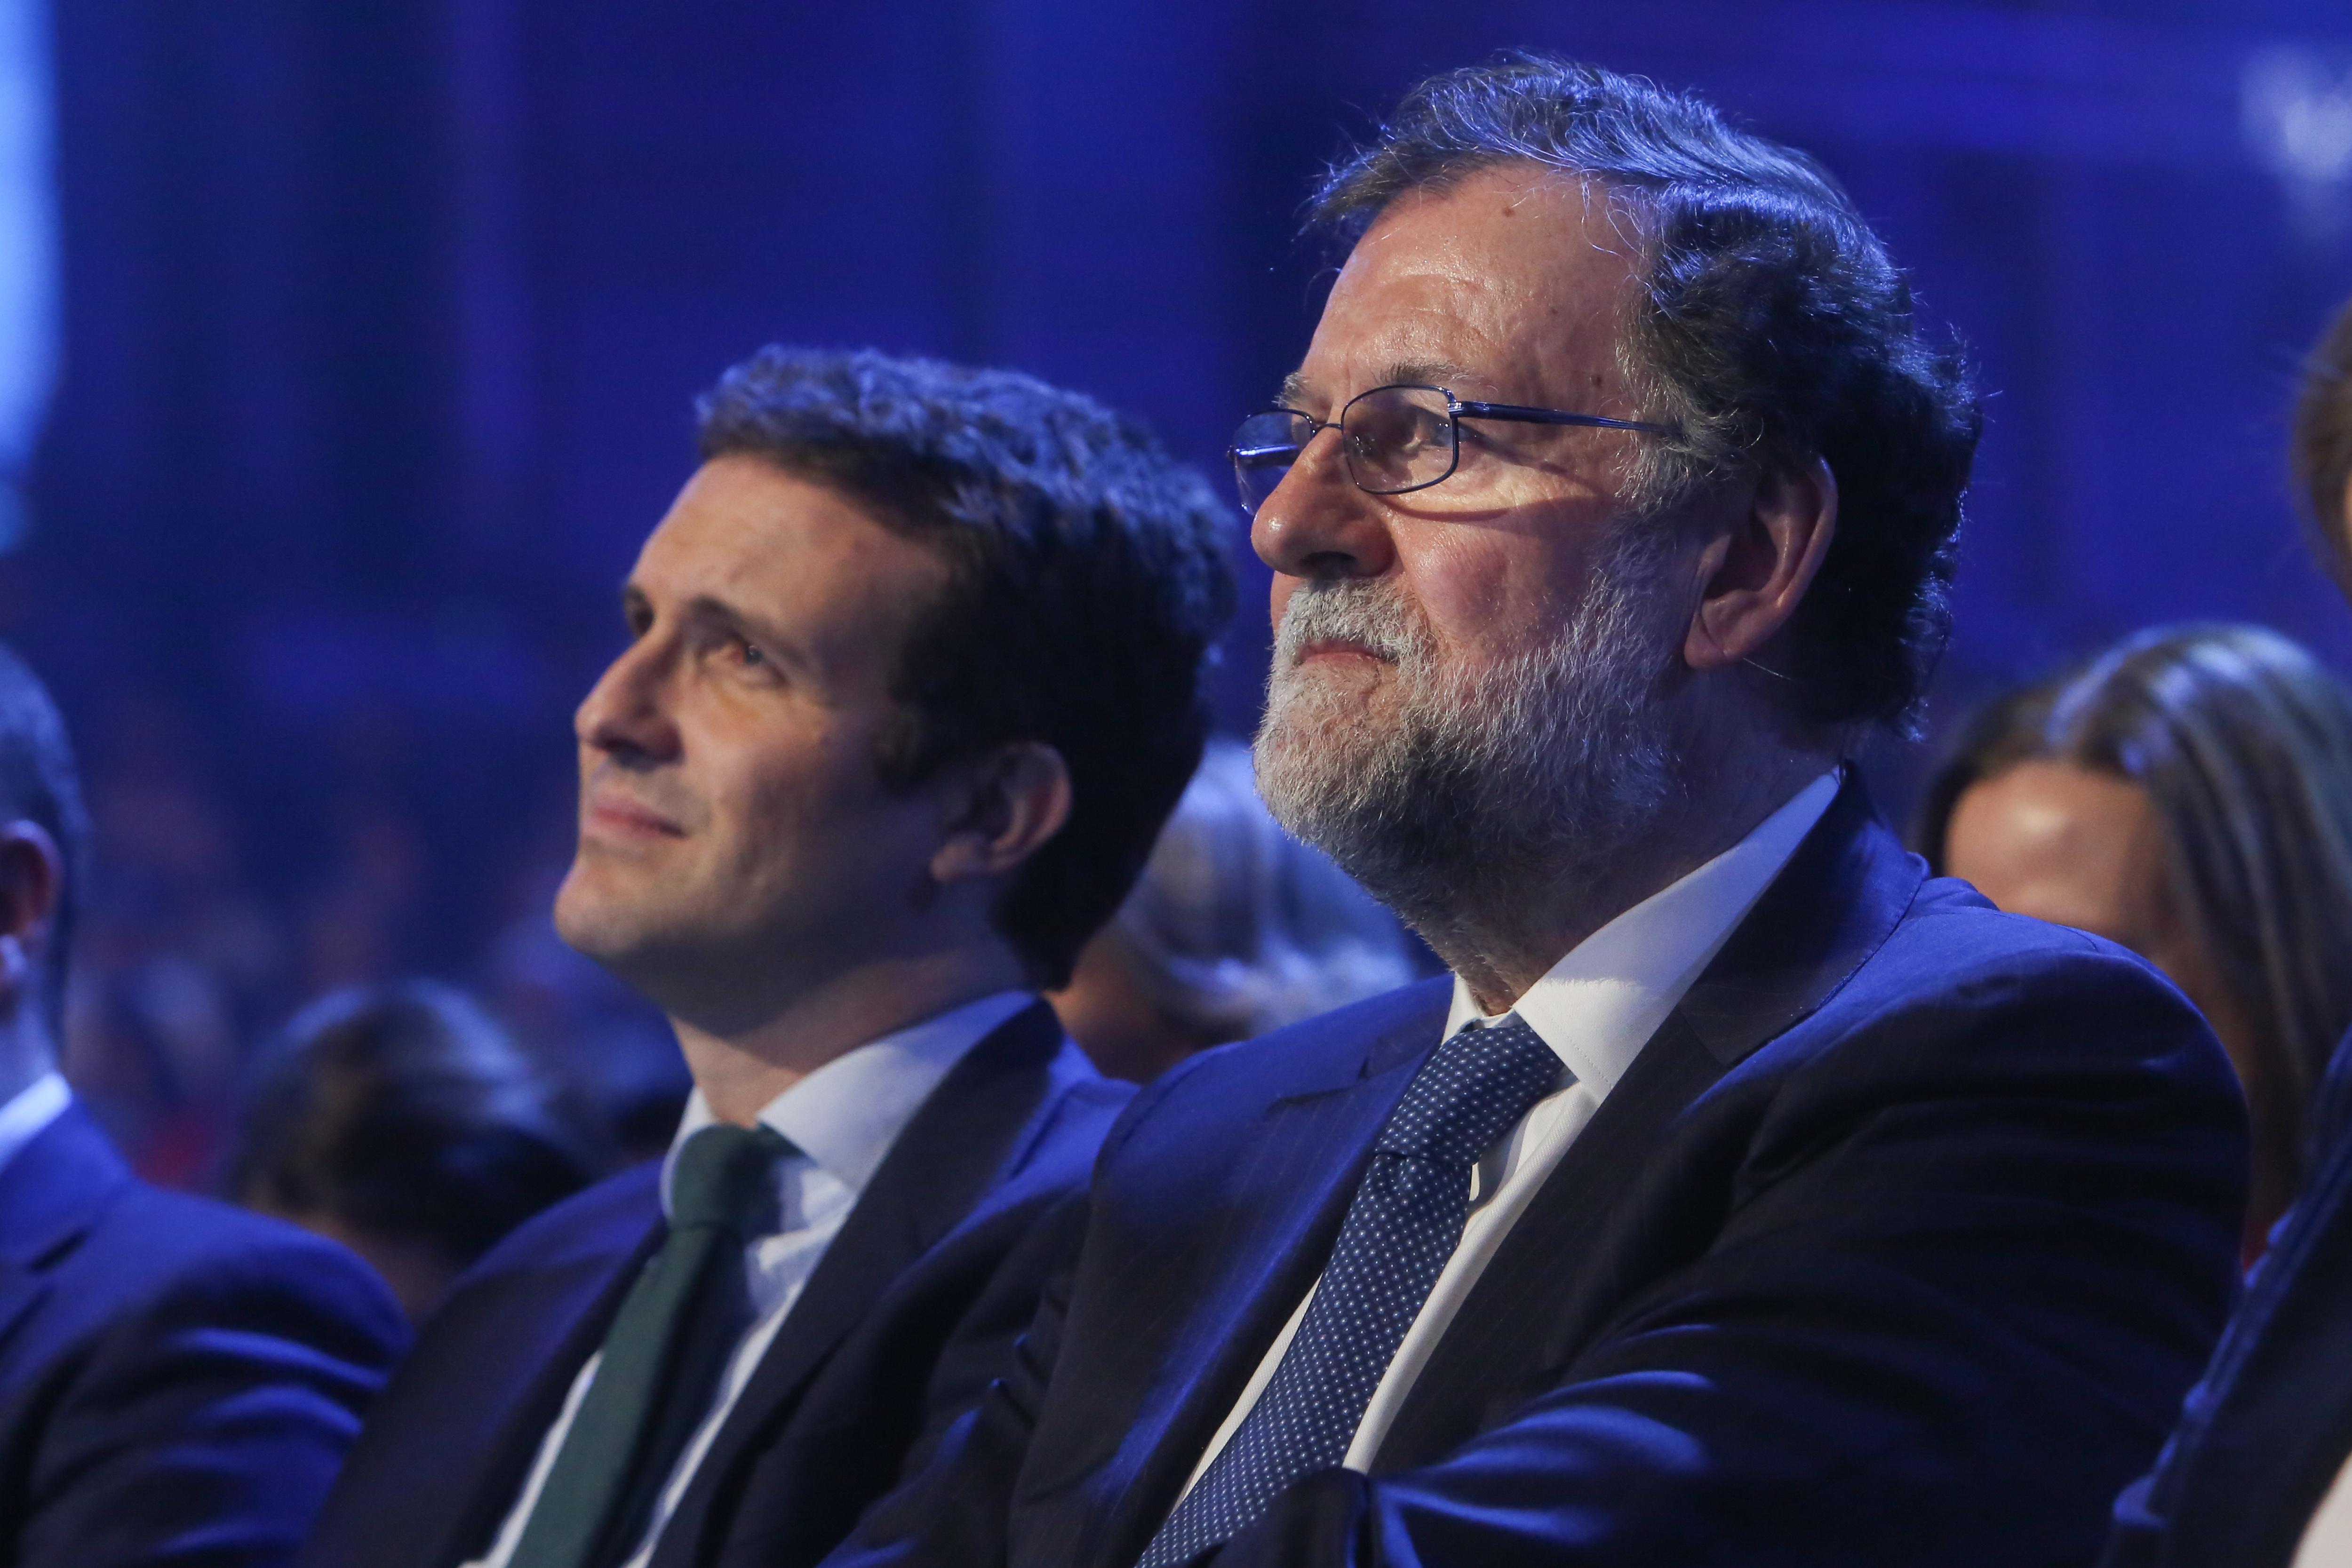 El presidente del PP Pablo Casado y el expresidente del Gobierno Mariano Rajoy en la Convención Nacional del PP España en libertad. Europa Press